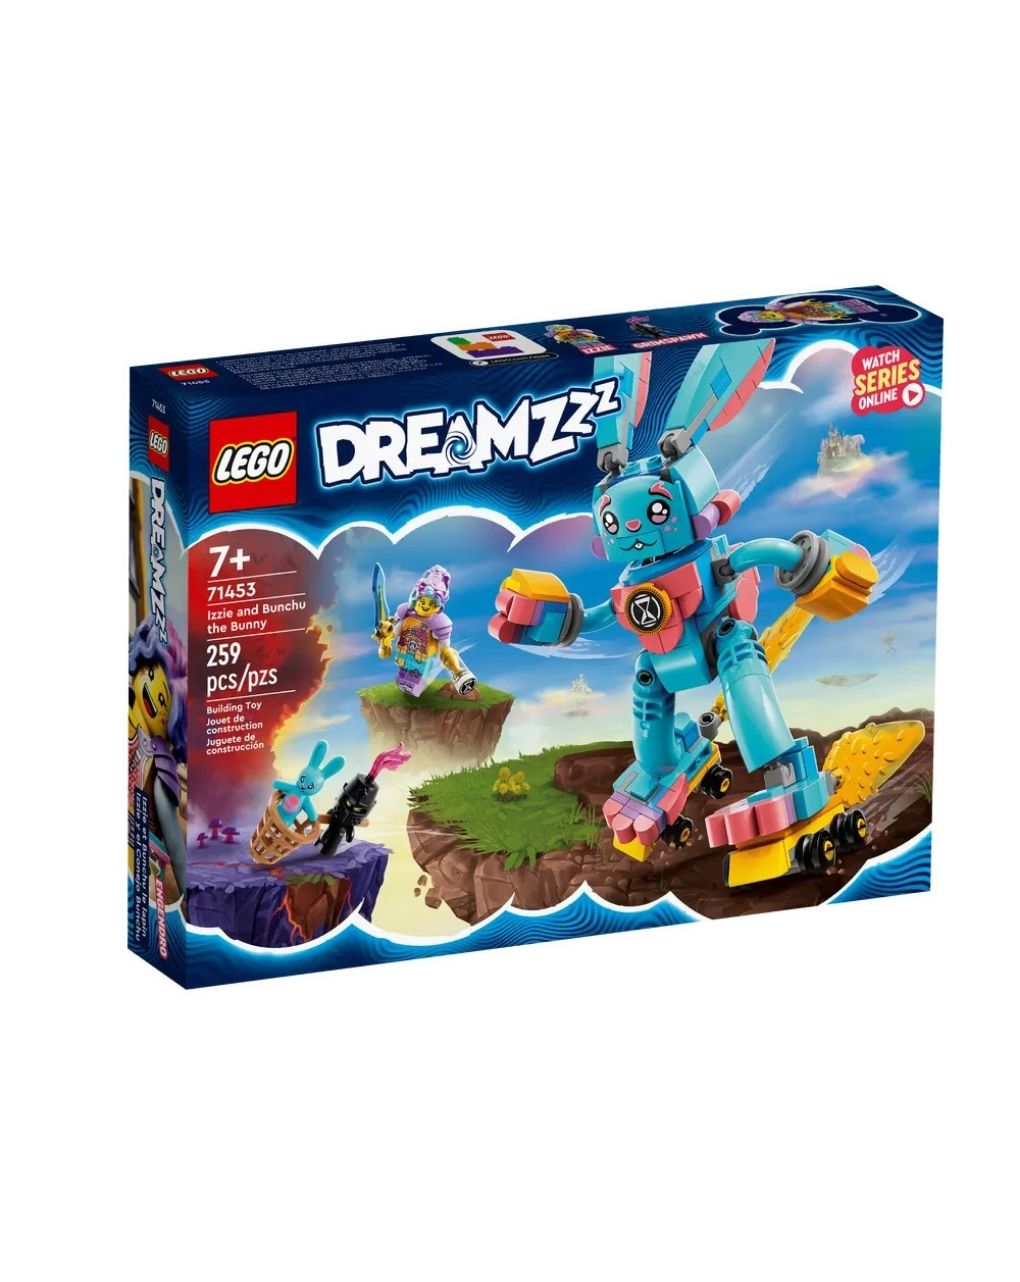 Lego dreamzzz izzie και bunchu το κουνέλι 71453 - Lego, LEGO DREAMZZZ